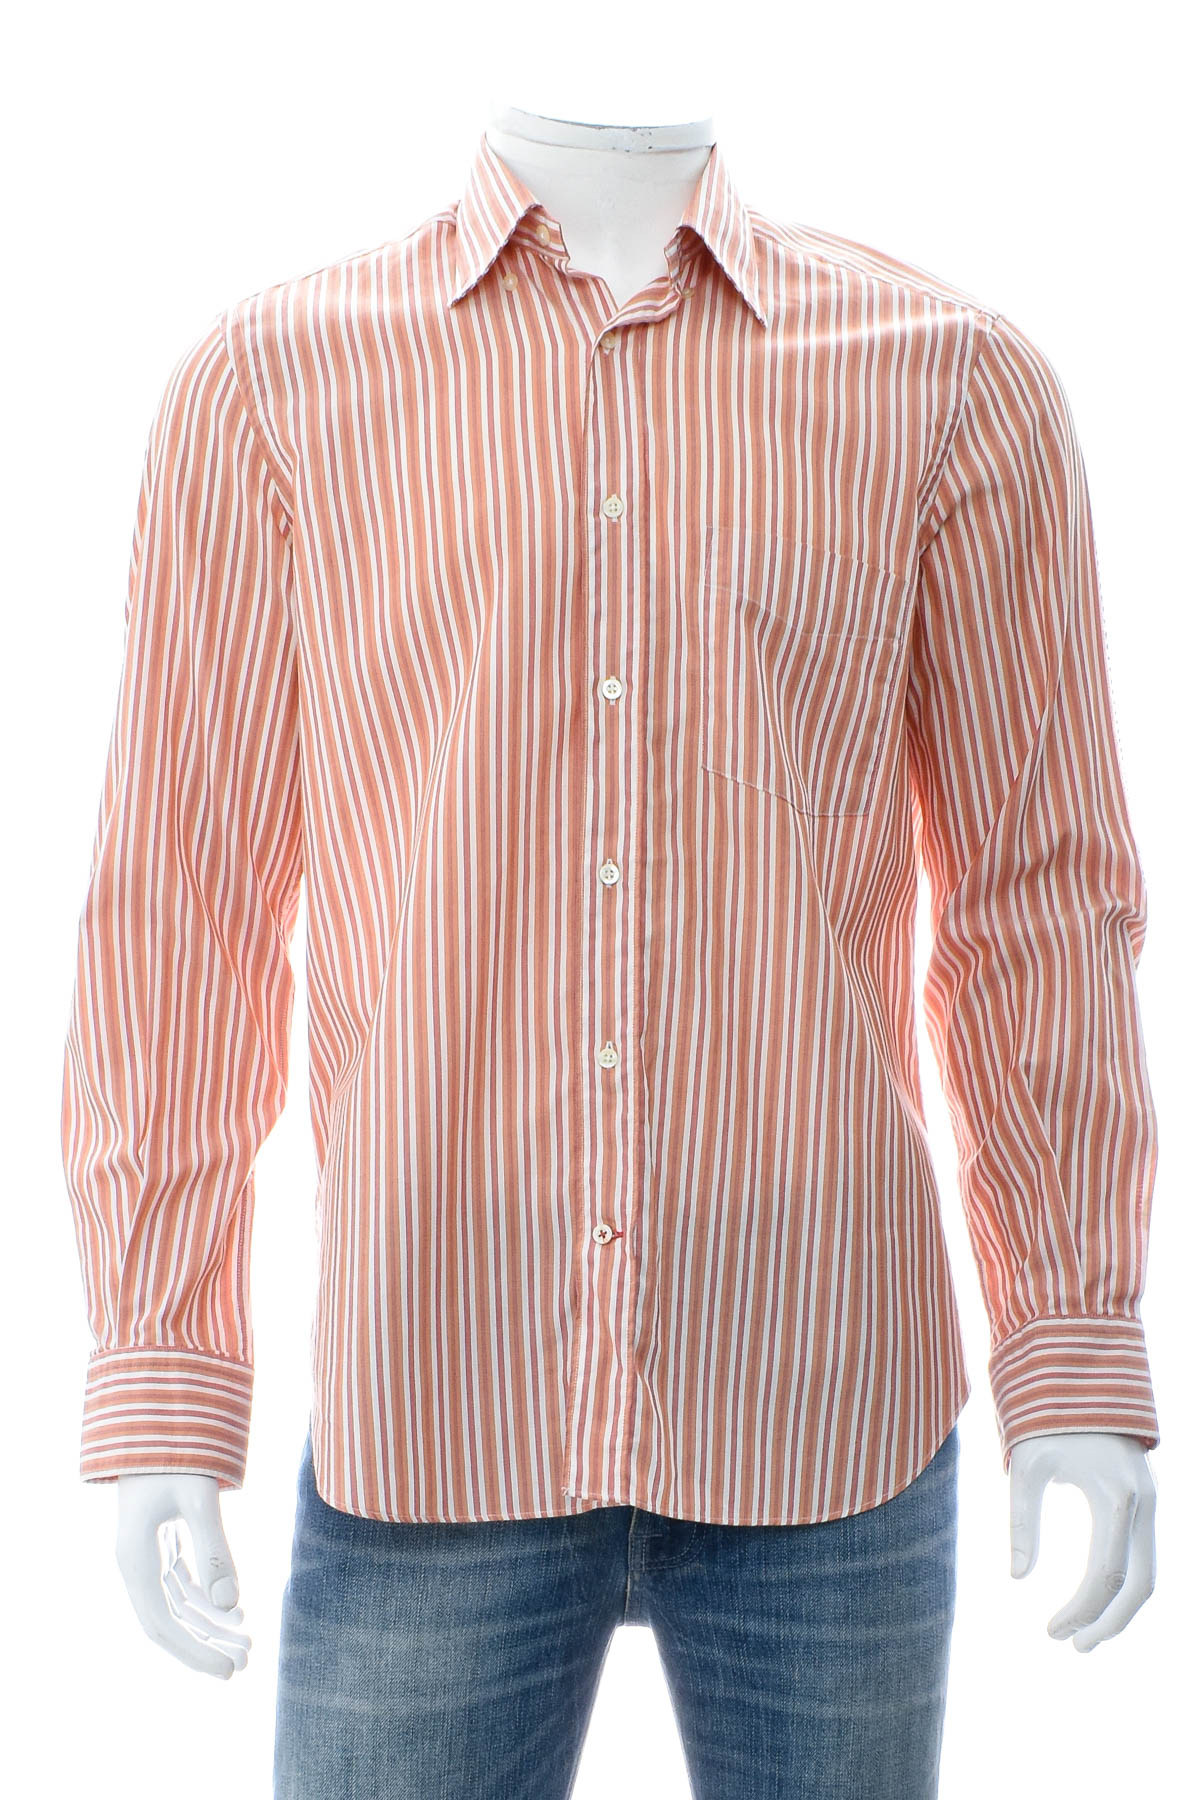 Ανδρικό πουκάμισο - Massimo Dutti - 0